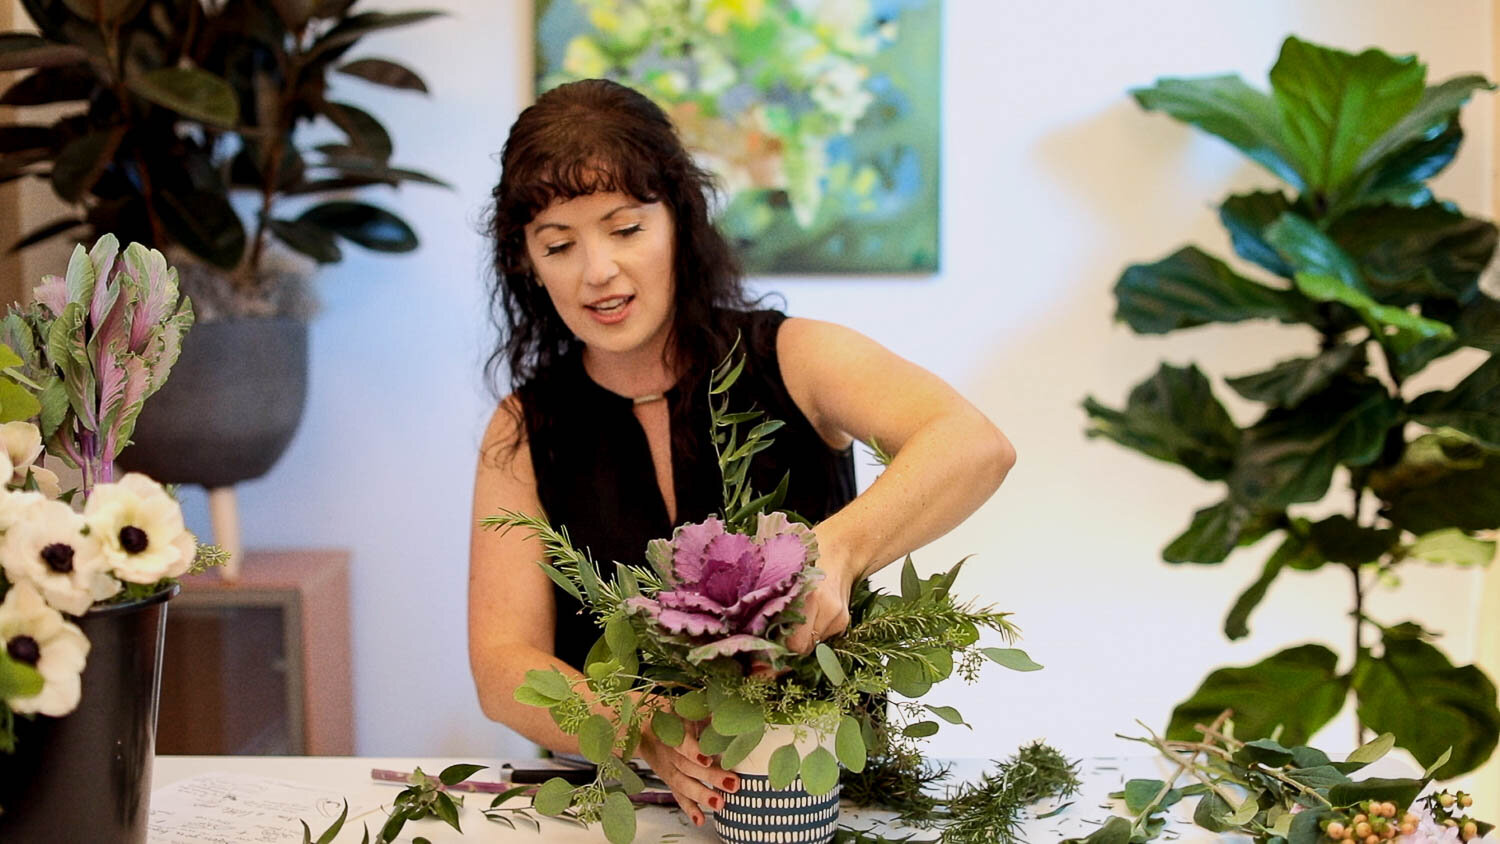 DIY Flower Arrangement Kit + Fresh Flowers – Native Poppy